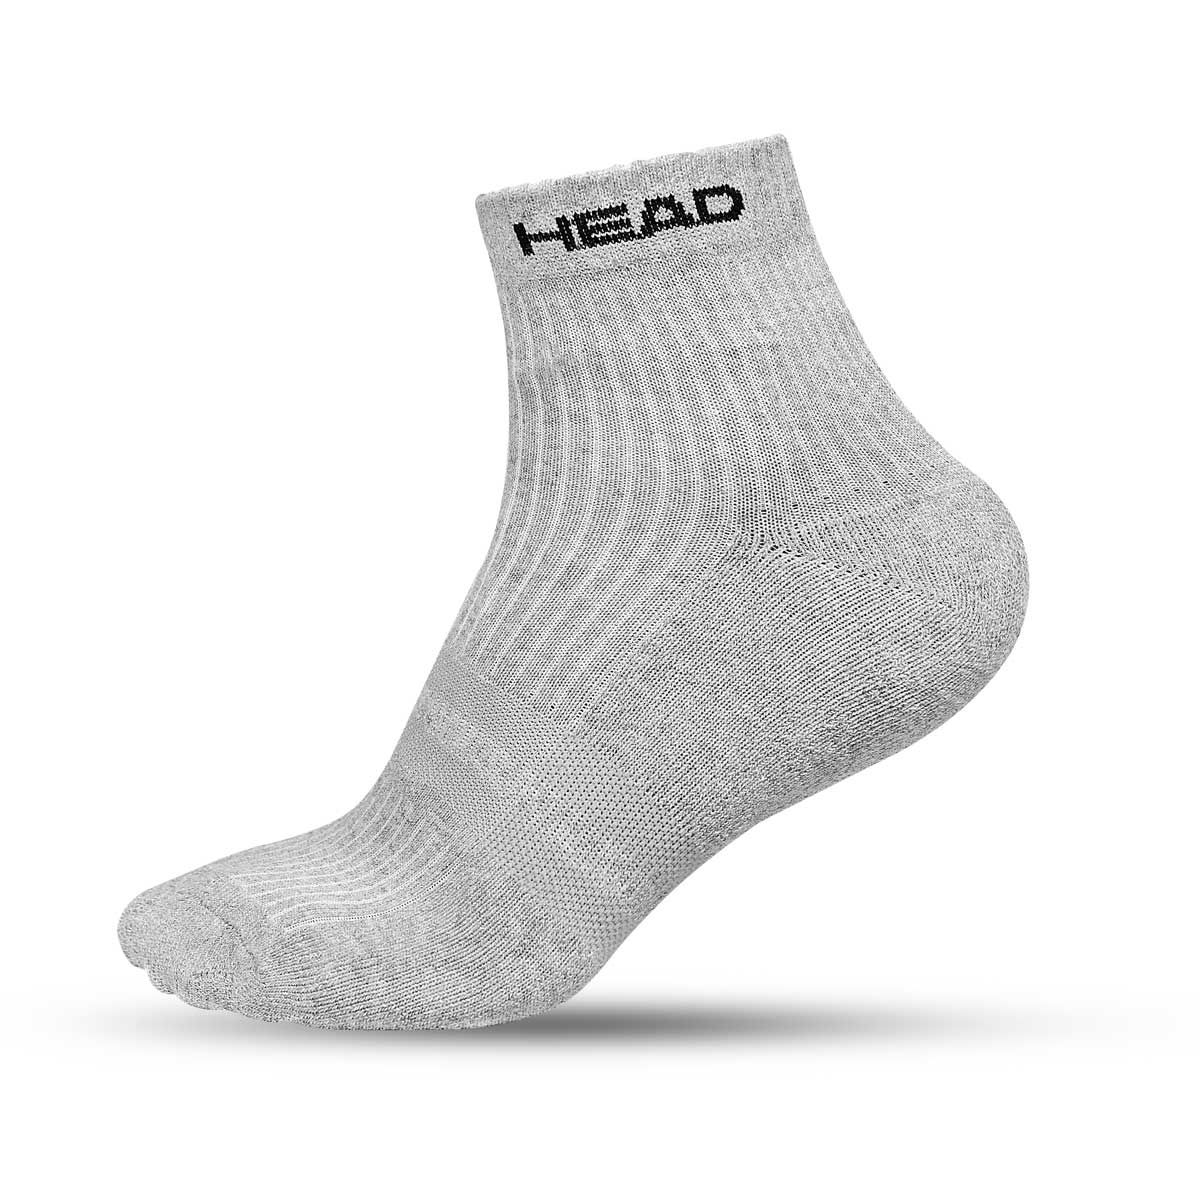 Head HSK-75 Ankle Socks (Gray)